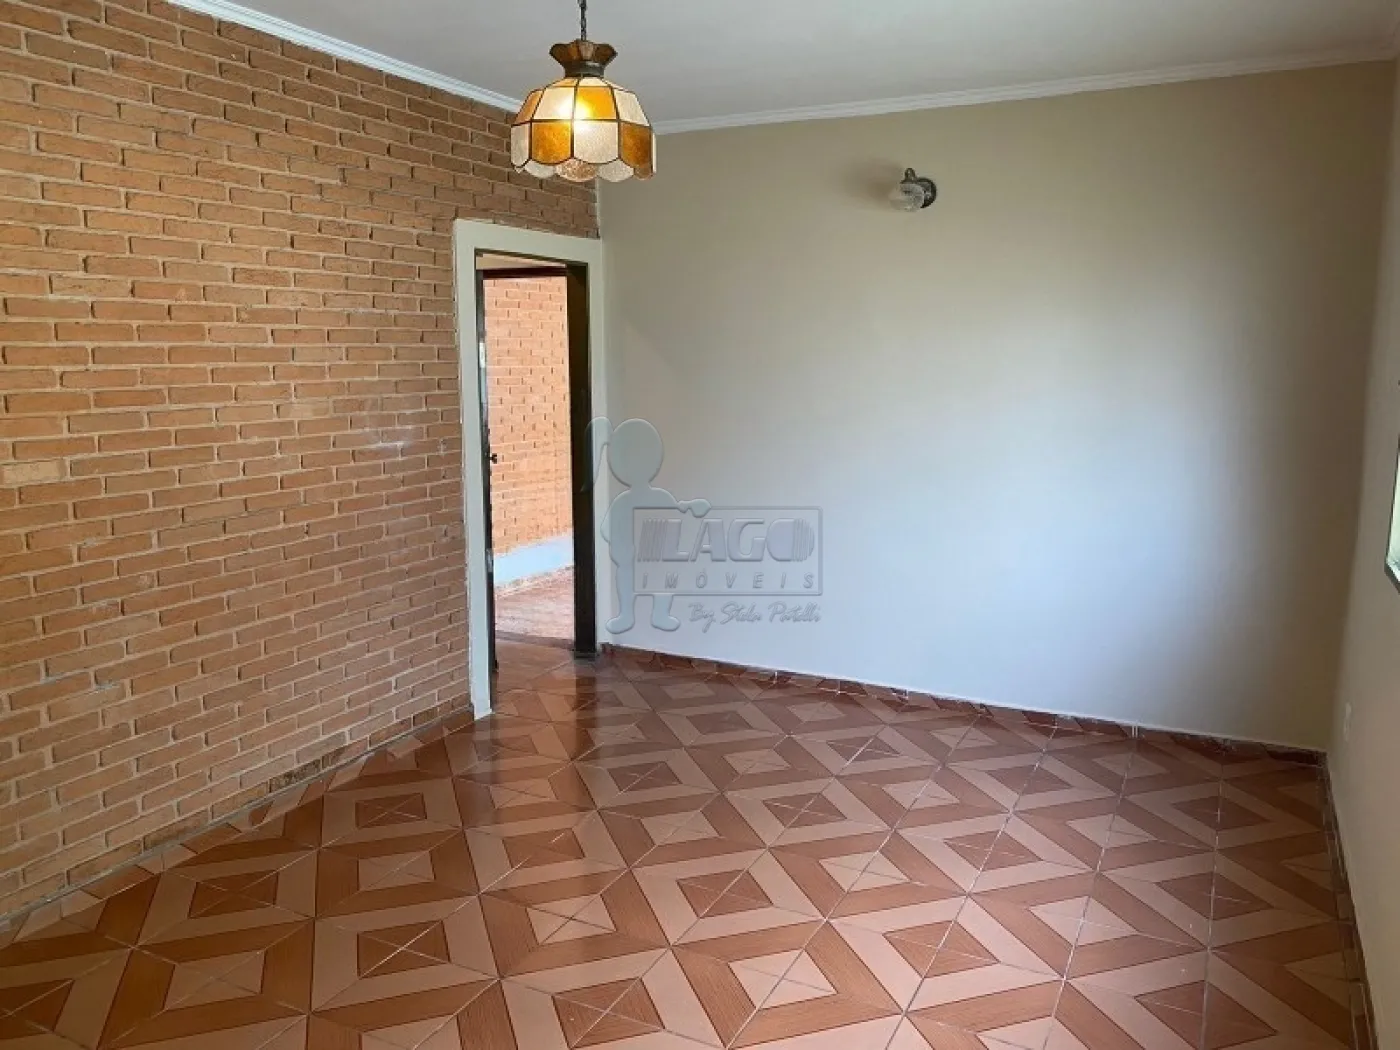 Alugar Casas / Padrão em Ribeirão Preto R$ 1.700,00 - Foto 2